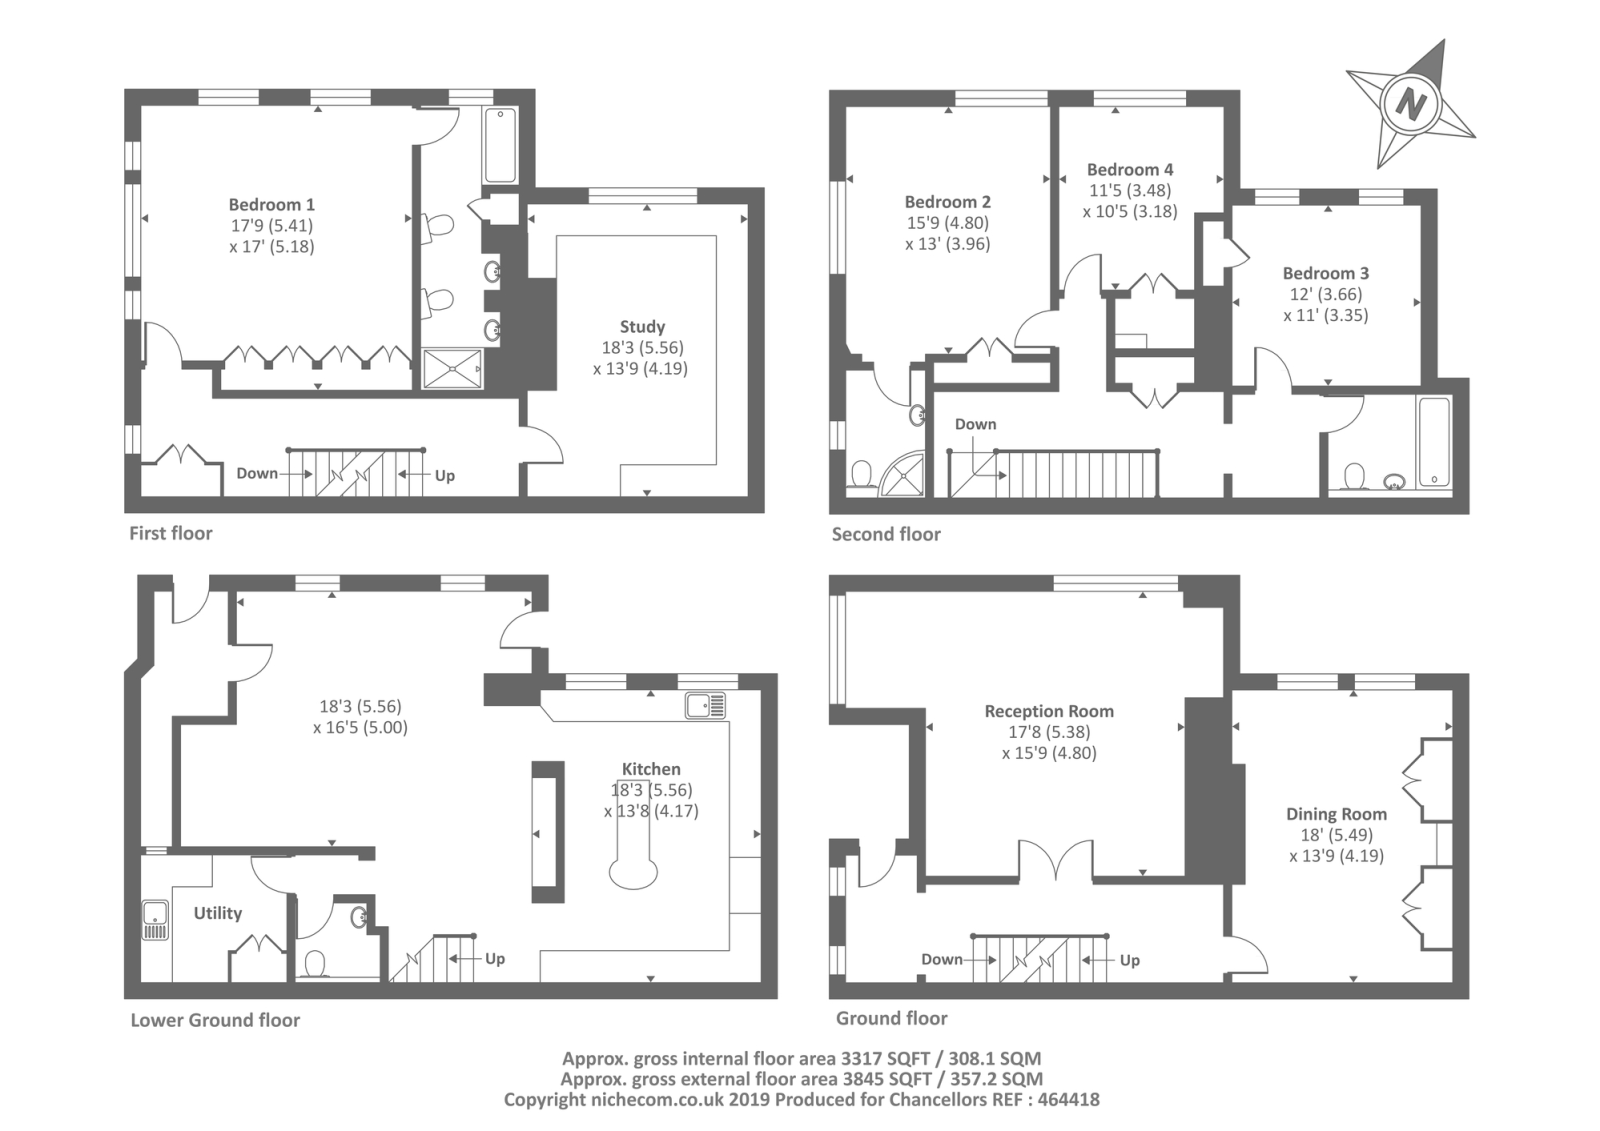 4 Bedrooms End terrace house to rent in Oldfield Wood, Woking GU22